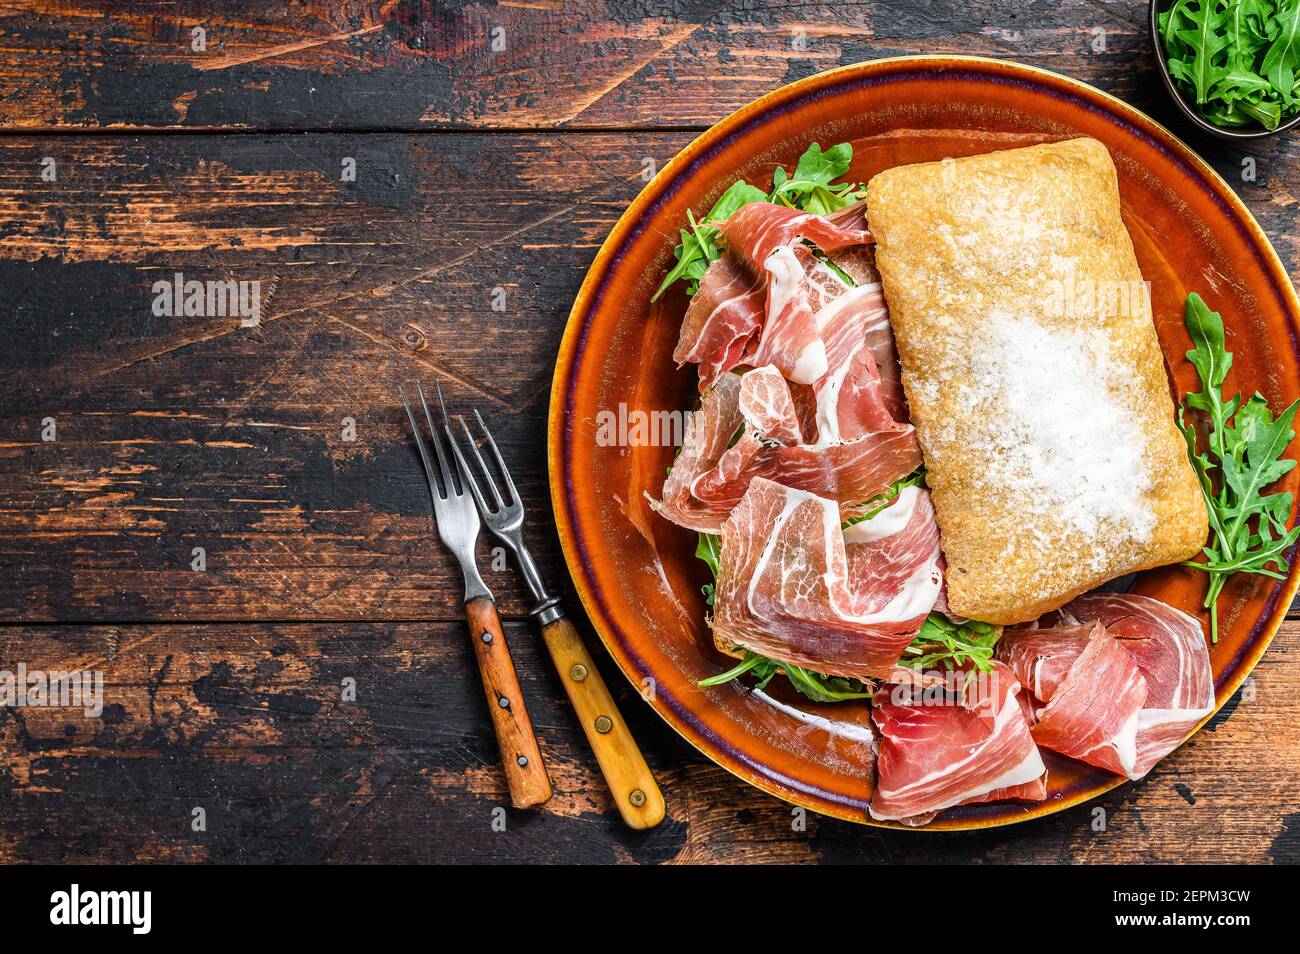 Spanish bocadillo de jamon, serrano ham sandwich on ciabatta bread with arugula. Dark wooden background. Top view. Copy space Stock Photo